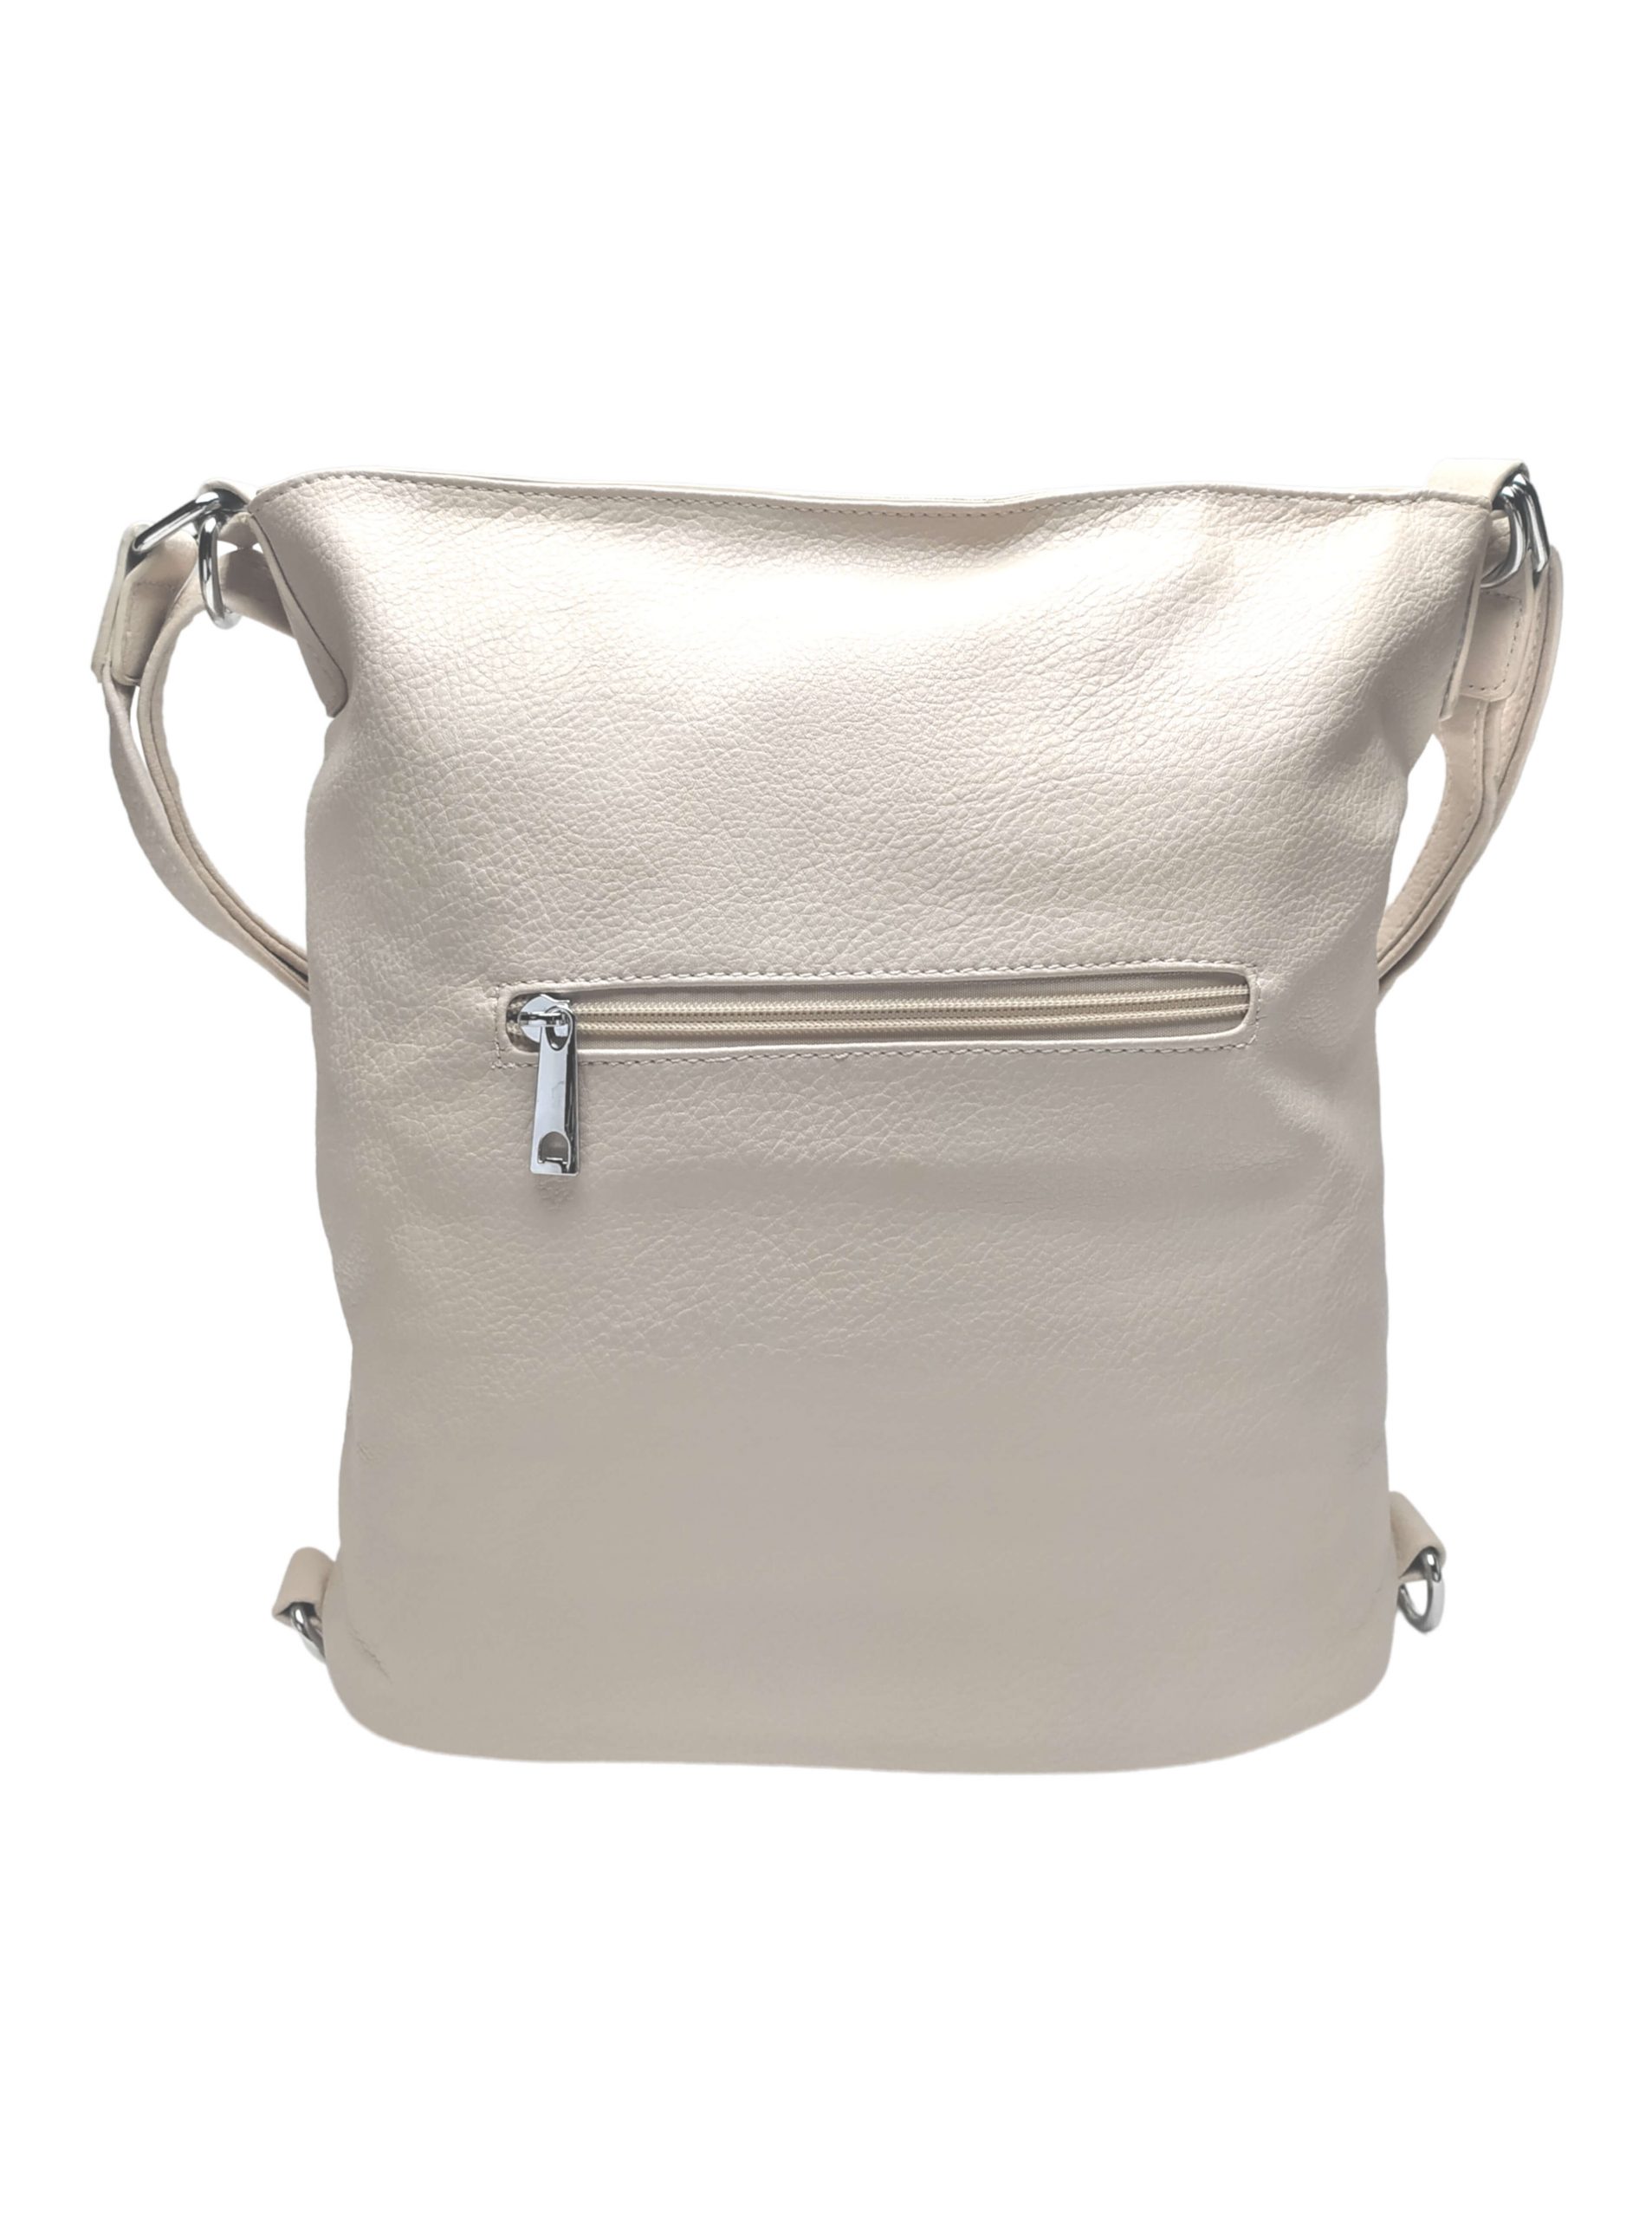 Střední béžový kabelko-batoh 2v1 s třásněmi, Bella Belly, 5394, zadní strana kabelko-batohu